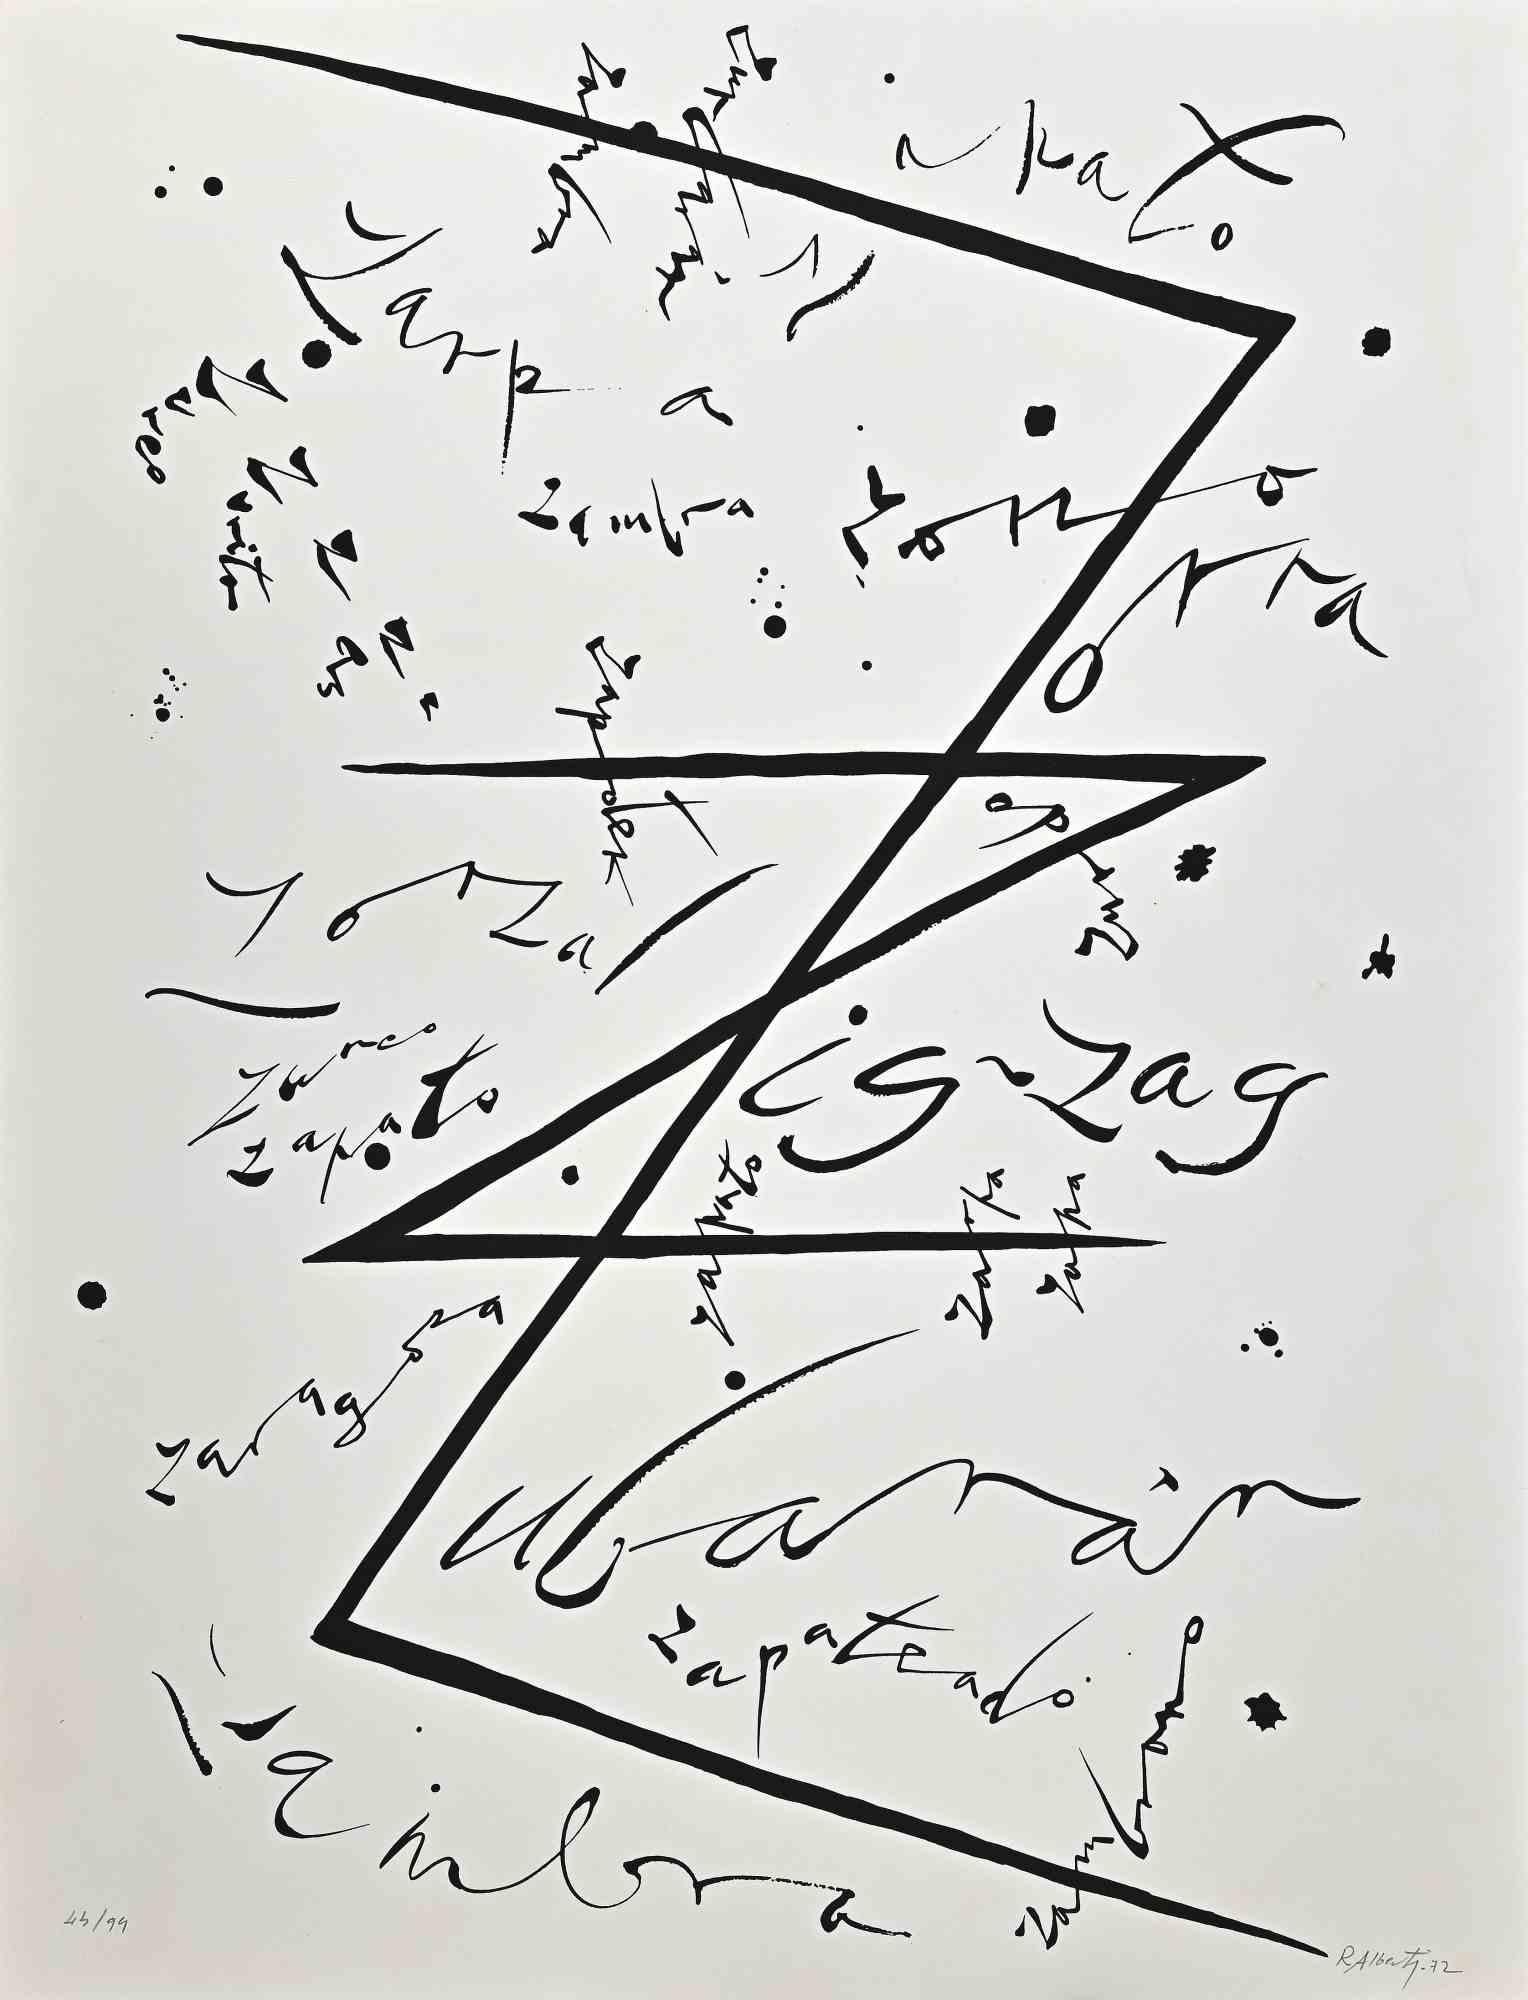 Lettre Z   de la série Alphabet est une lithographie originale réalisée par Rafael Alberti en 1972.

Signé et daté à la main dans la marge inférieure.

Numéroté dans la marge inférieure. Edition 44/99

Bonnes conditions

L'œuvre représente la lettre